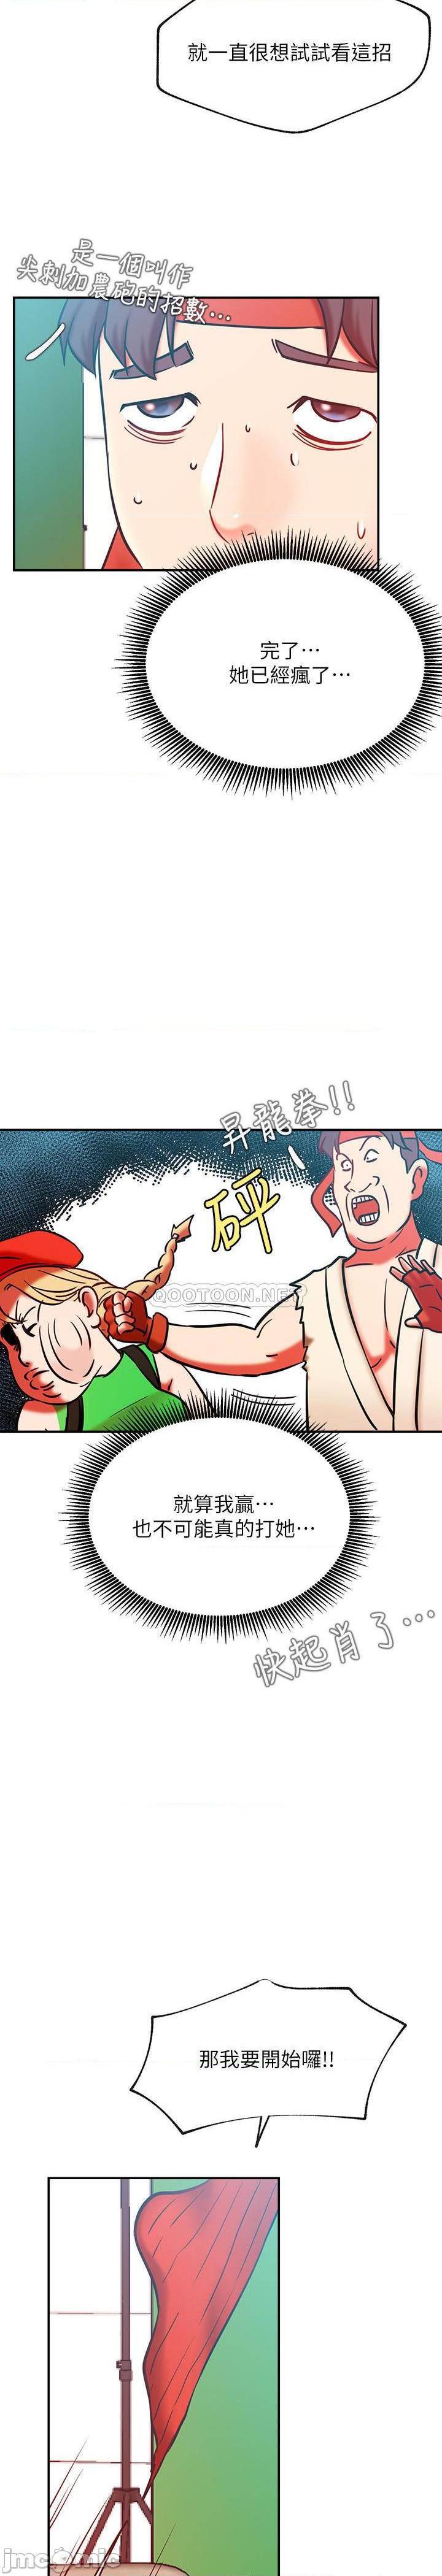 《网红私生活》漫画 第30话 - 火热的角色扮演